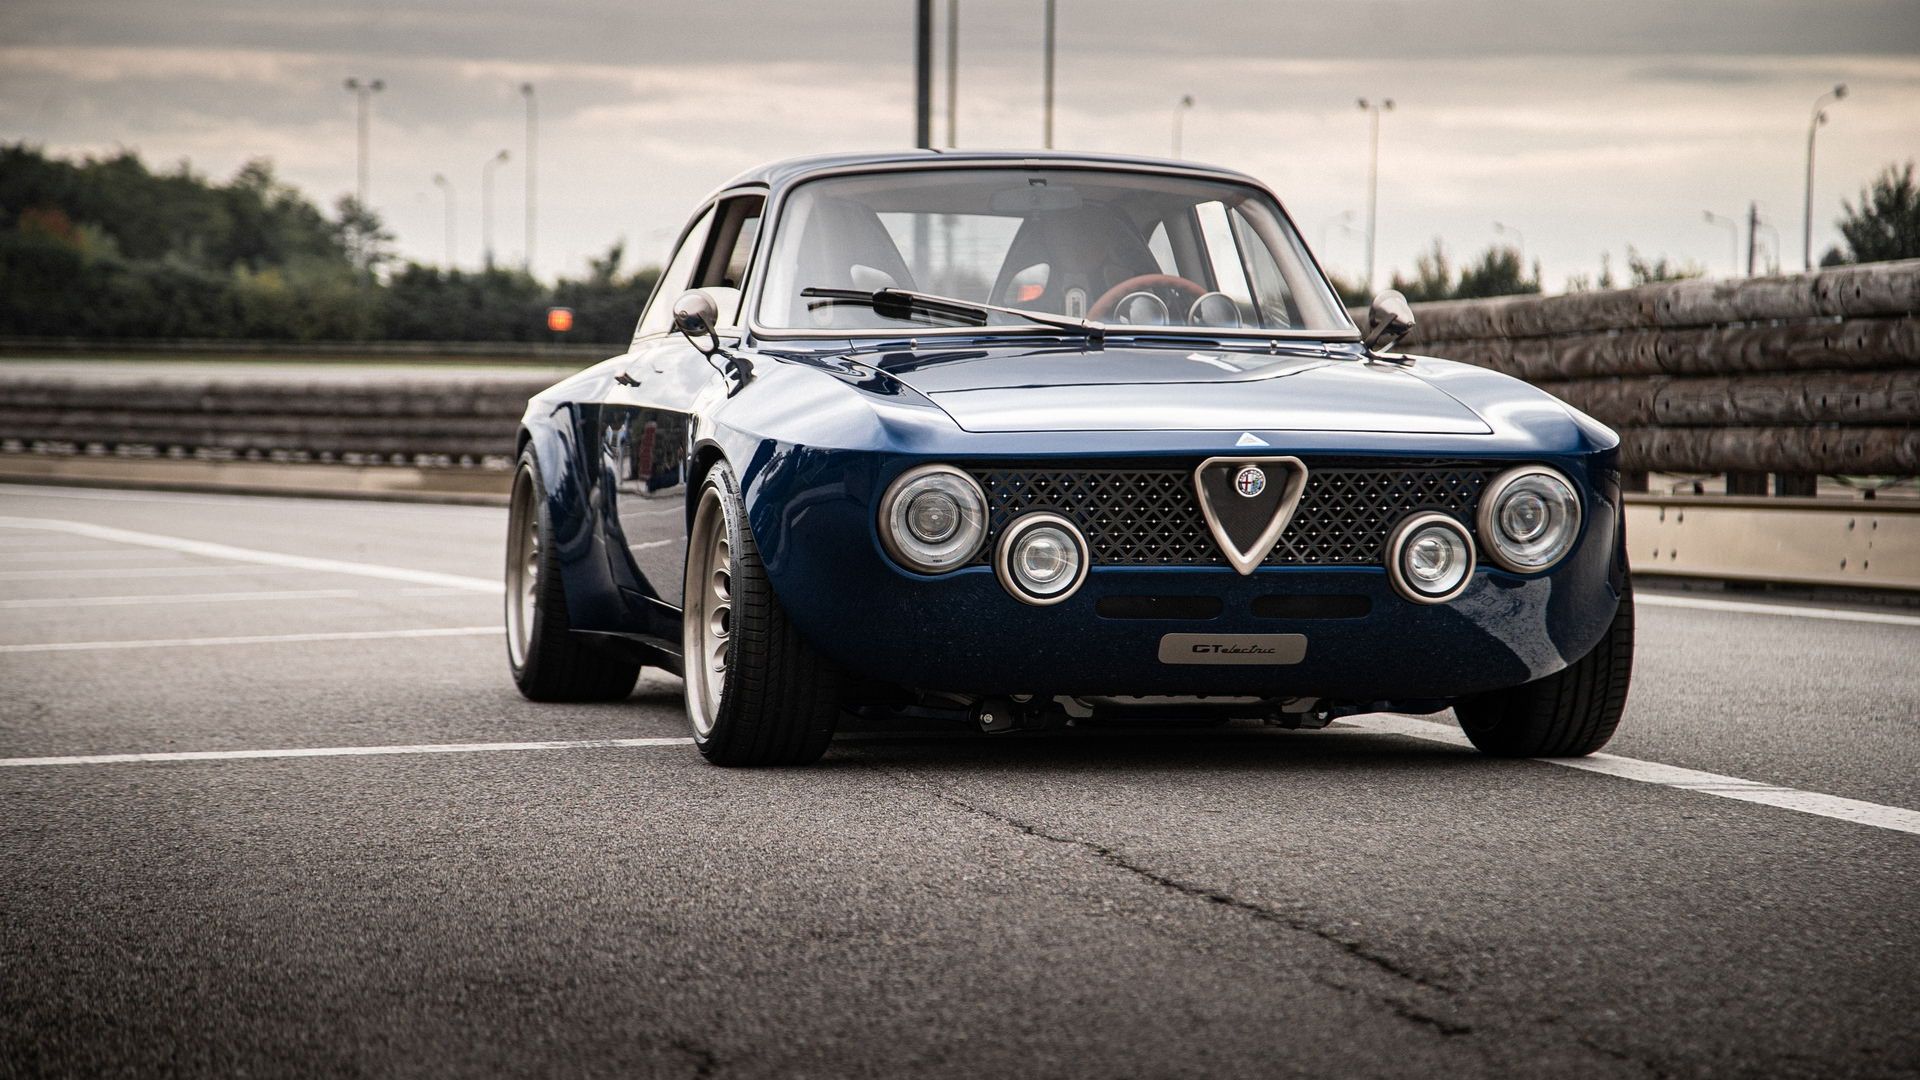 نمای جلو خودروی الکتریکی آلفا رومئو جولیا / Alfa Romeo Giulia GTA آبی رنگ در جاده